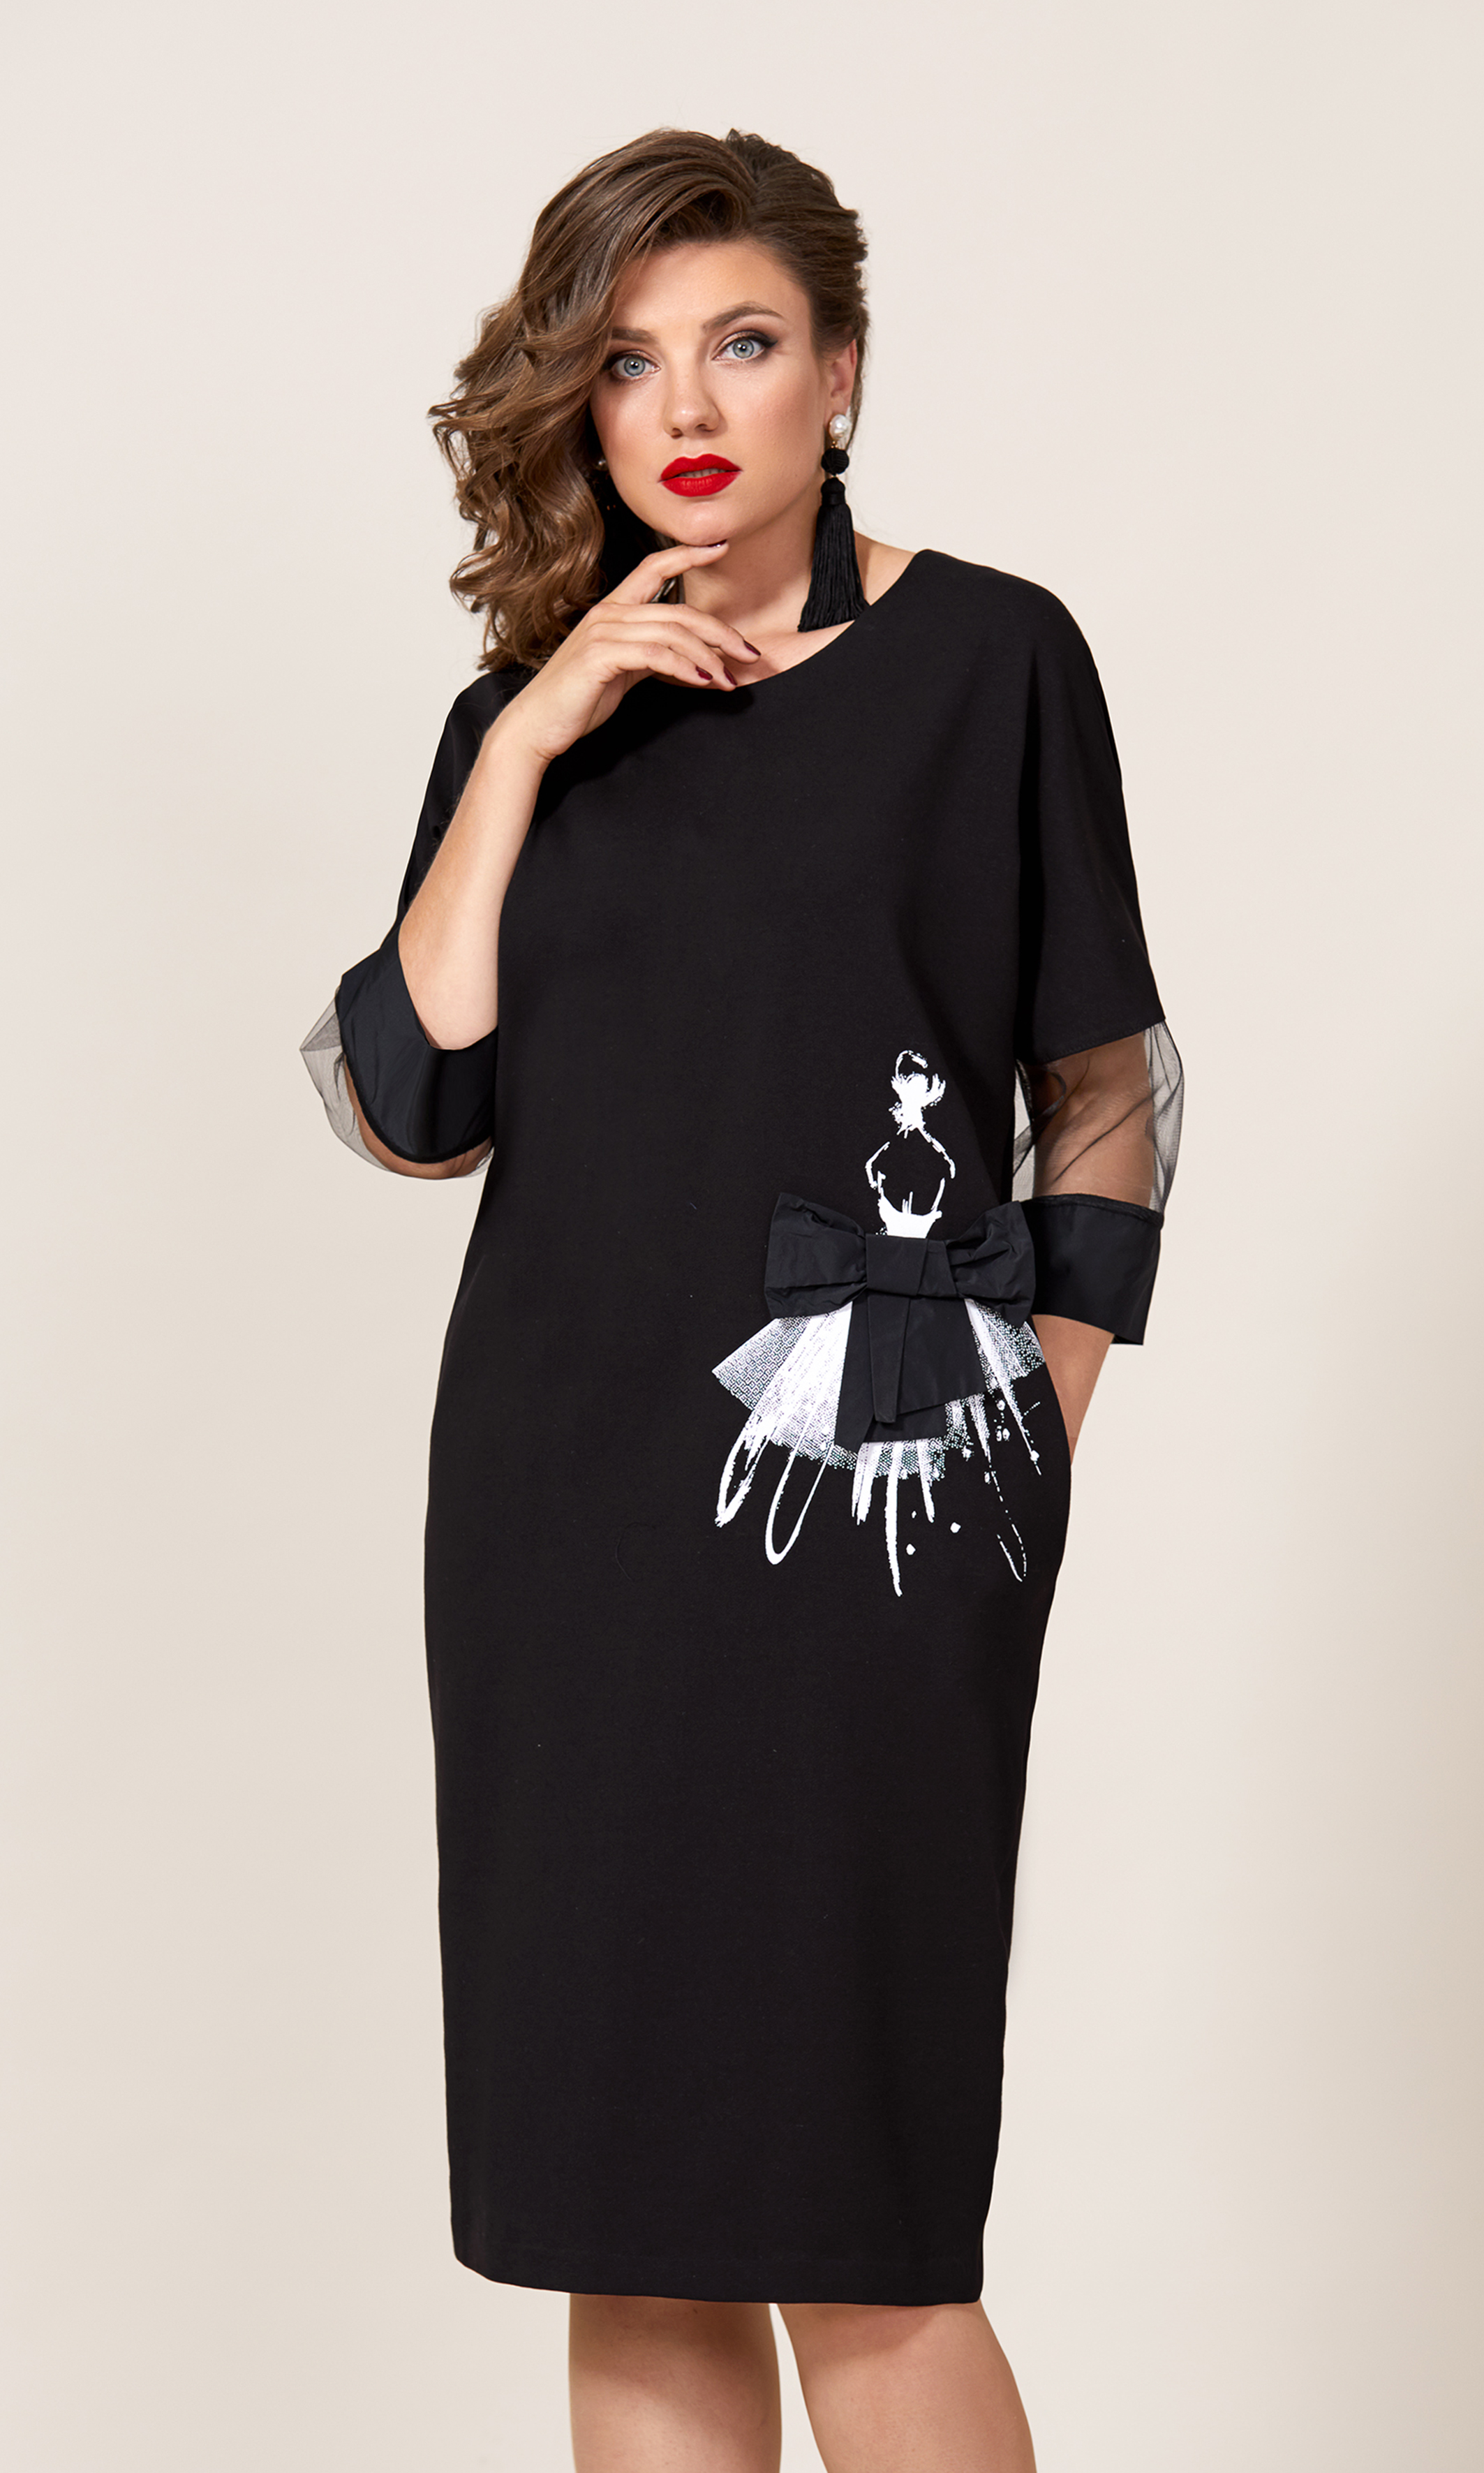 Трикотажное платье с дизайнерской печатью и бантом, черное